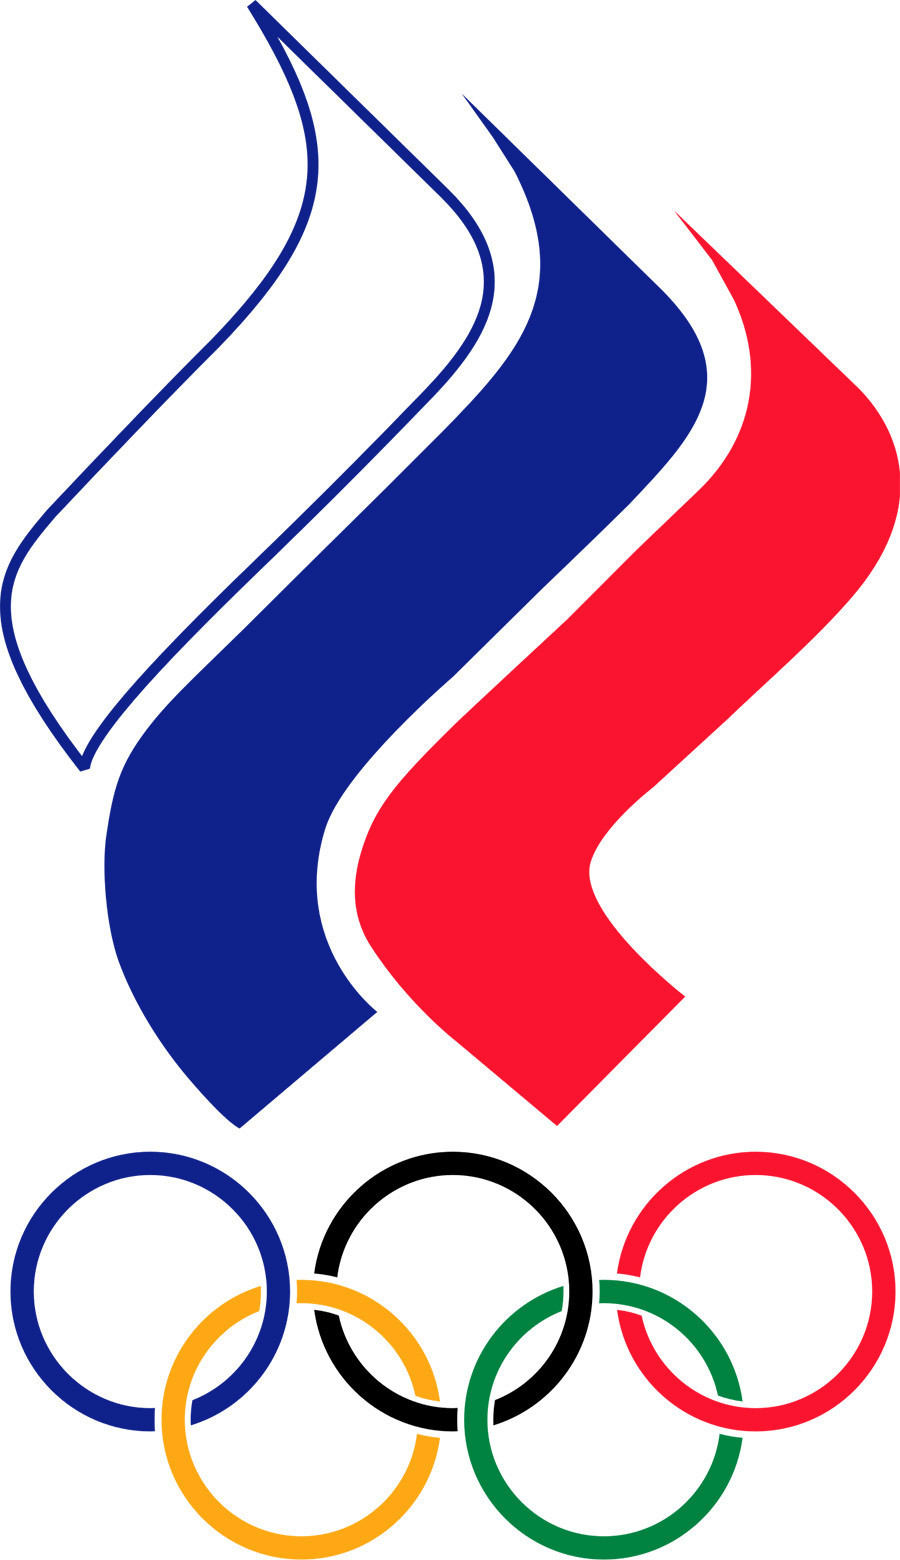 El emblema del Comité Olímpico Ruso
